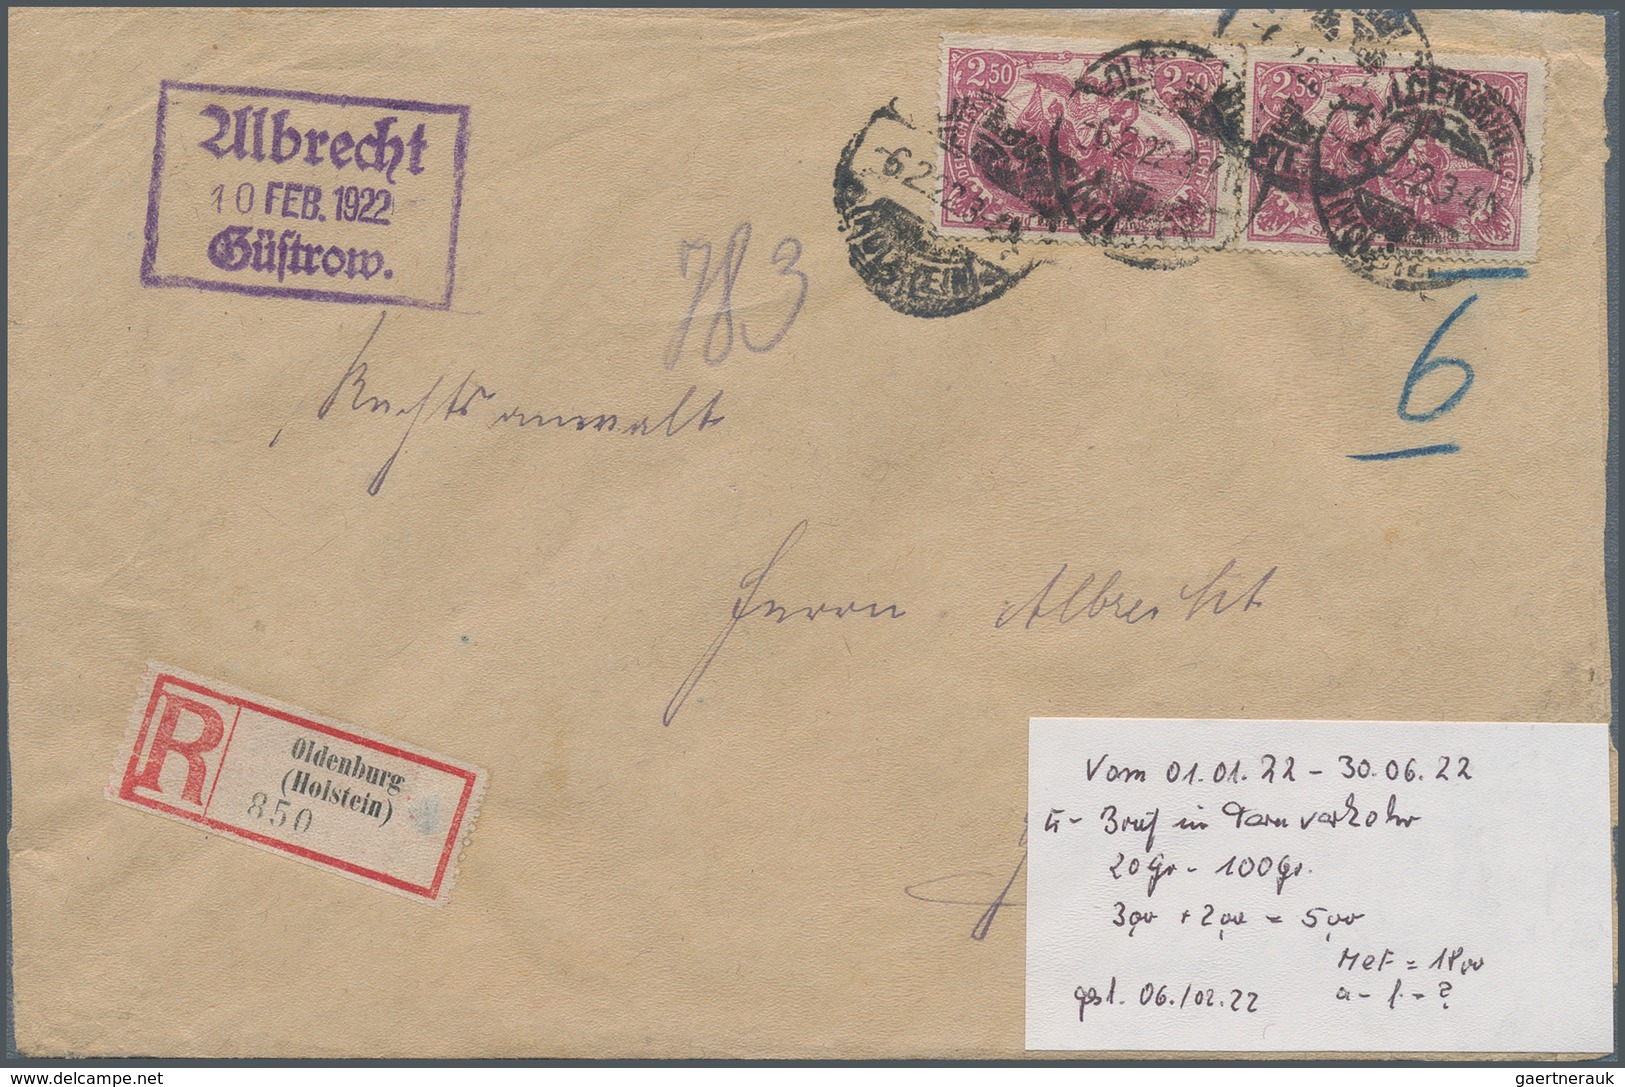 31032 Deutschland: 1870/1955, Belegeposten mit vielen Deutsches Reich Dienstpost Briefen, welche bereits v